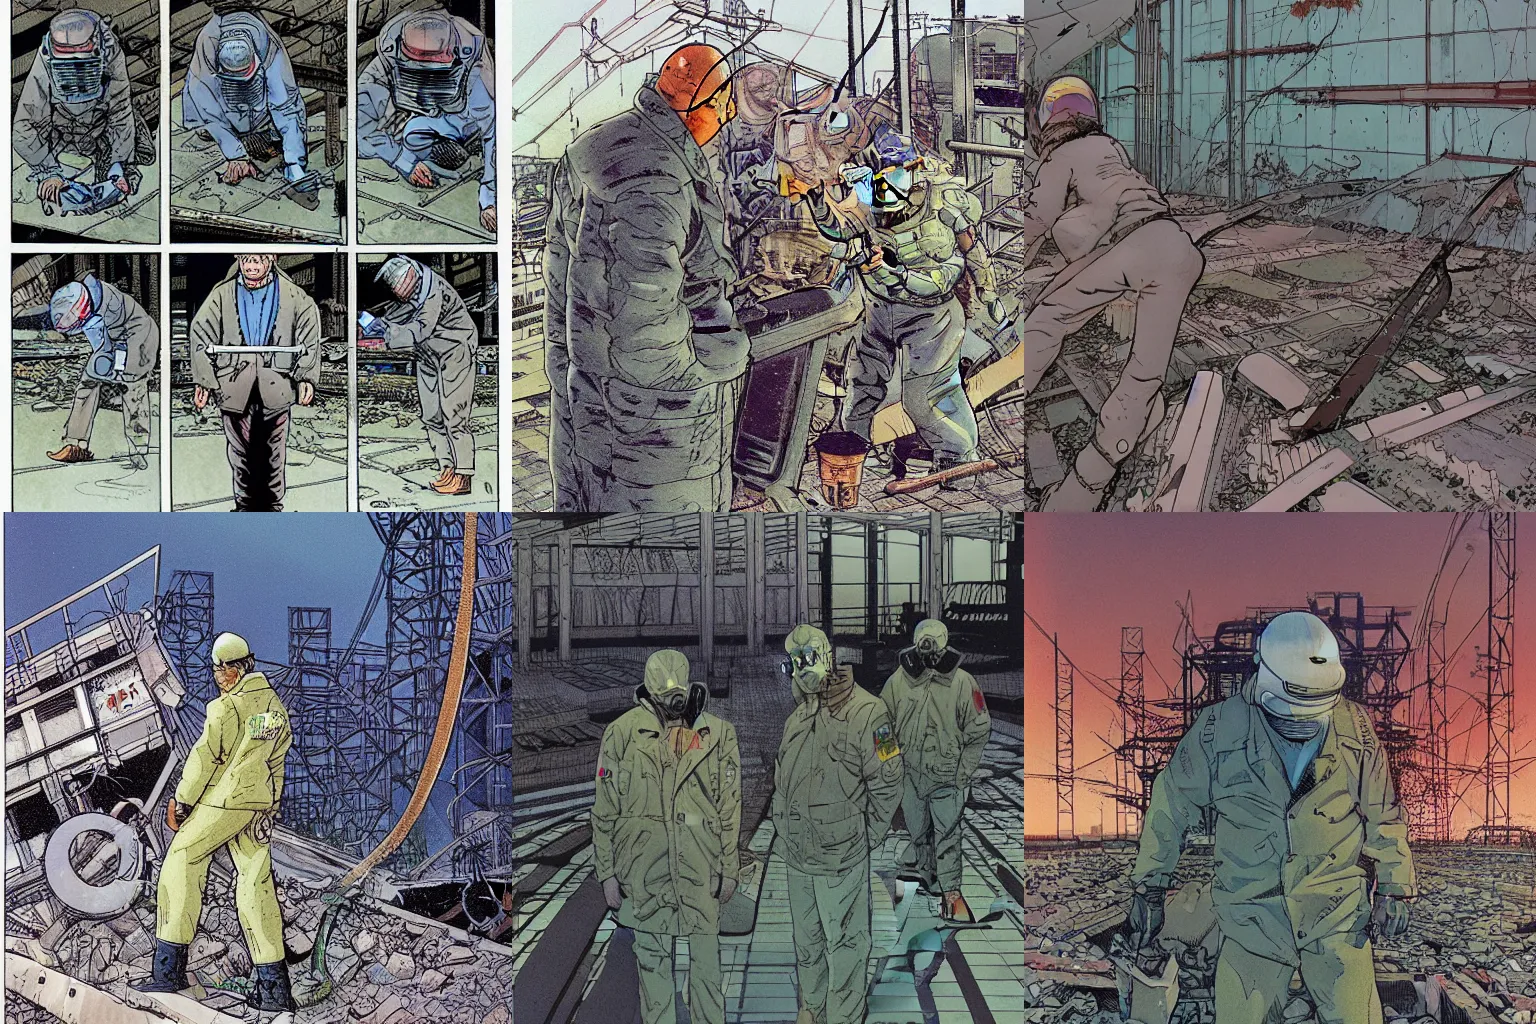 Prompt: liquidators at chernobyl, by moebius, masamune shirow and katsuhiro otomo